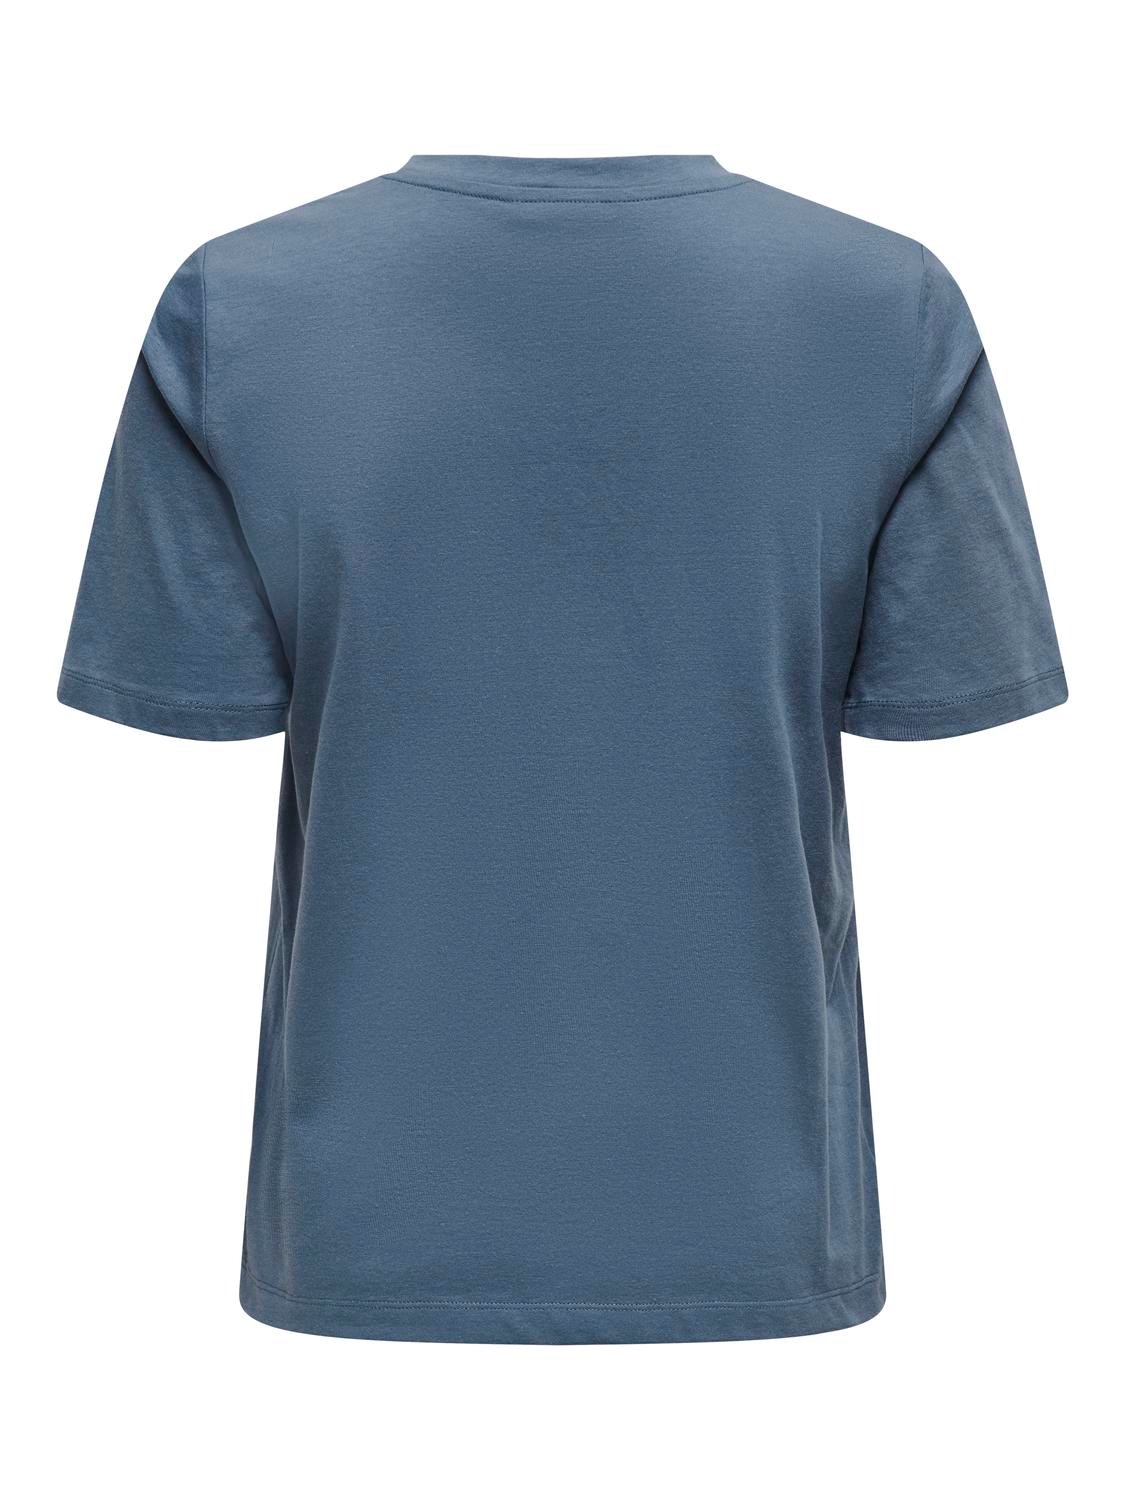 ONLY Regular Fit Round Neck T-Shirt -Vintage Indigo - 15270390